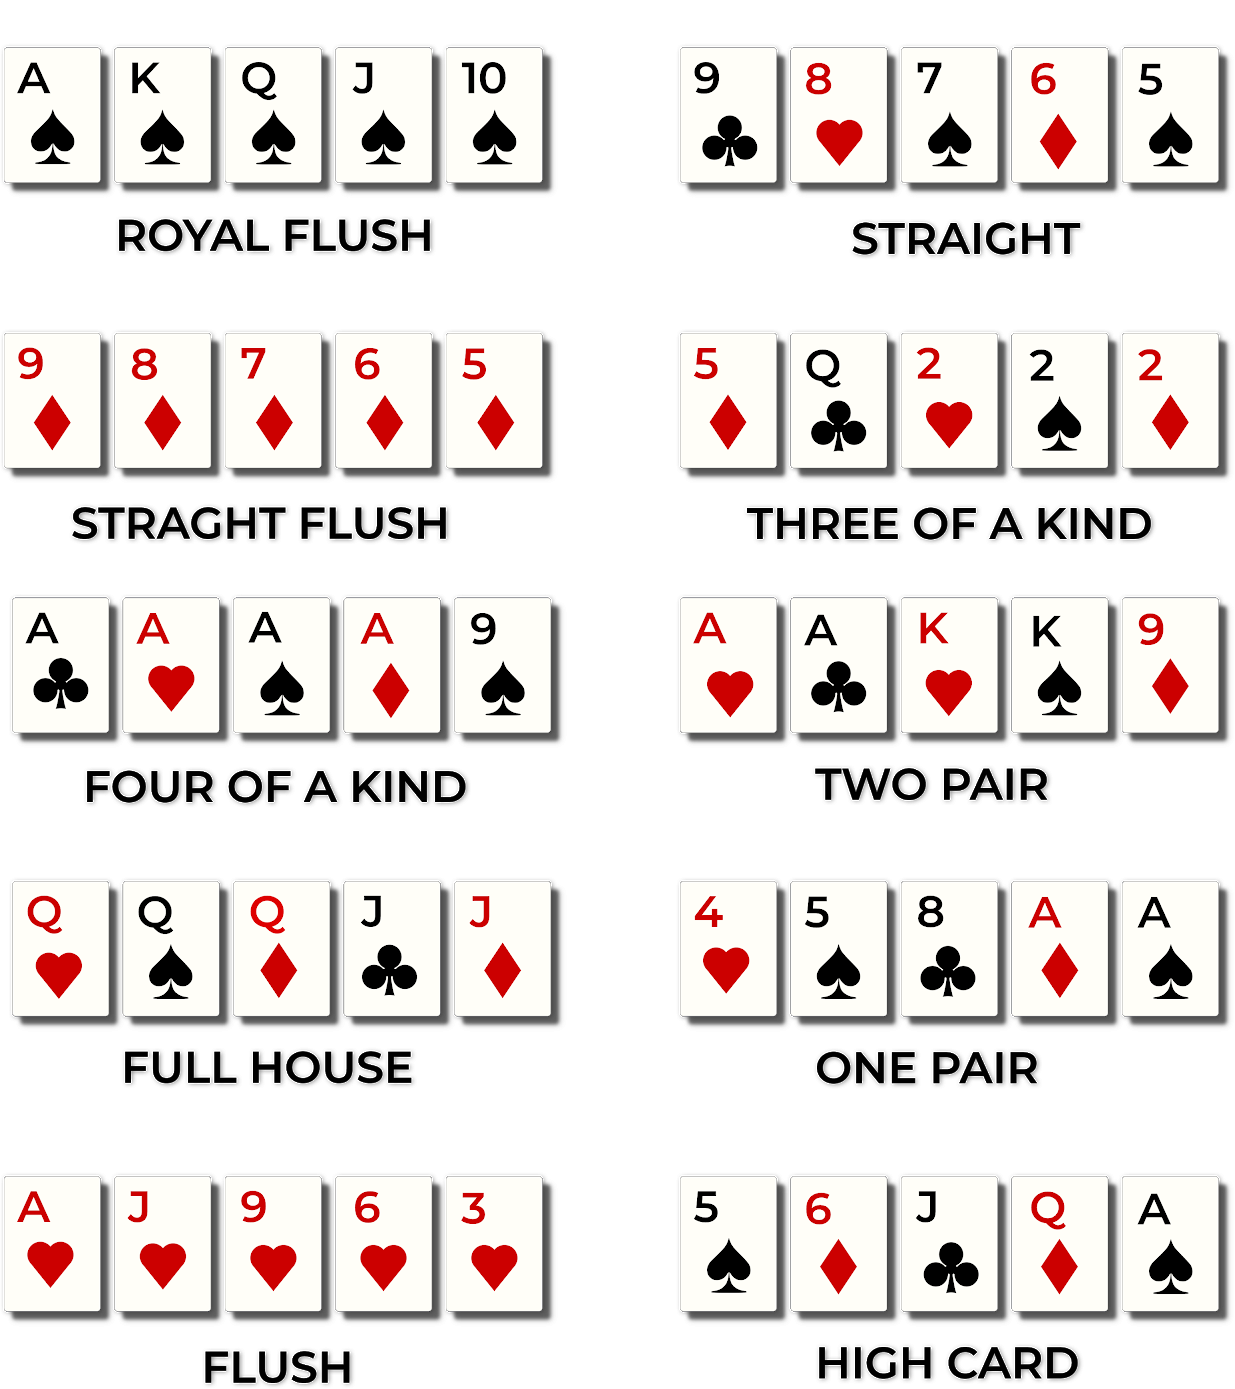 247 holdem poker